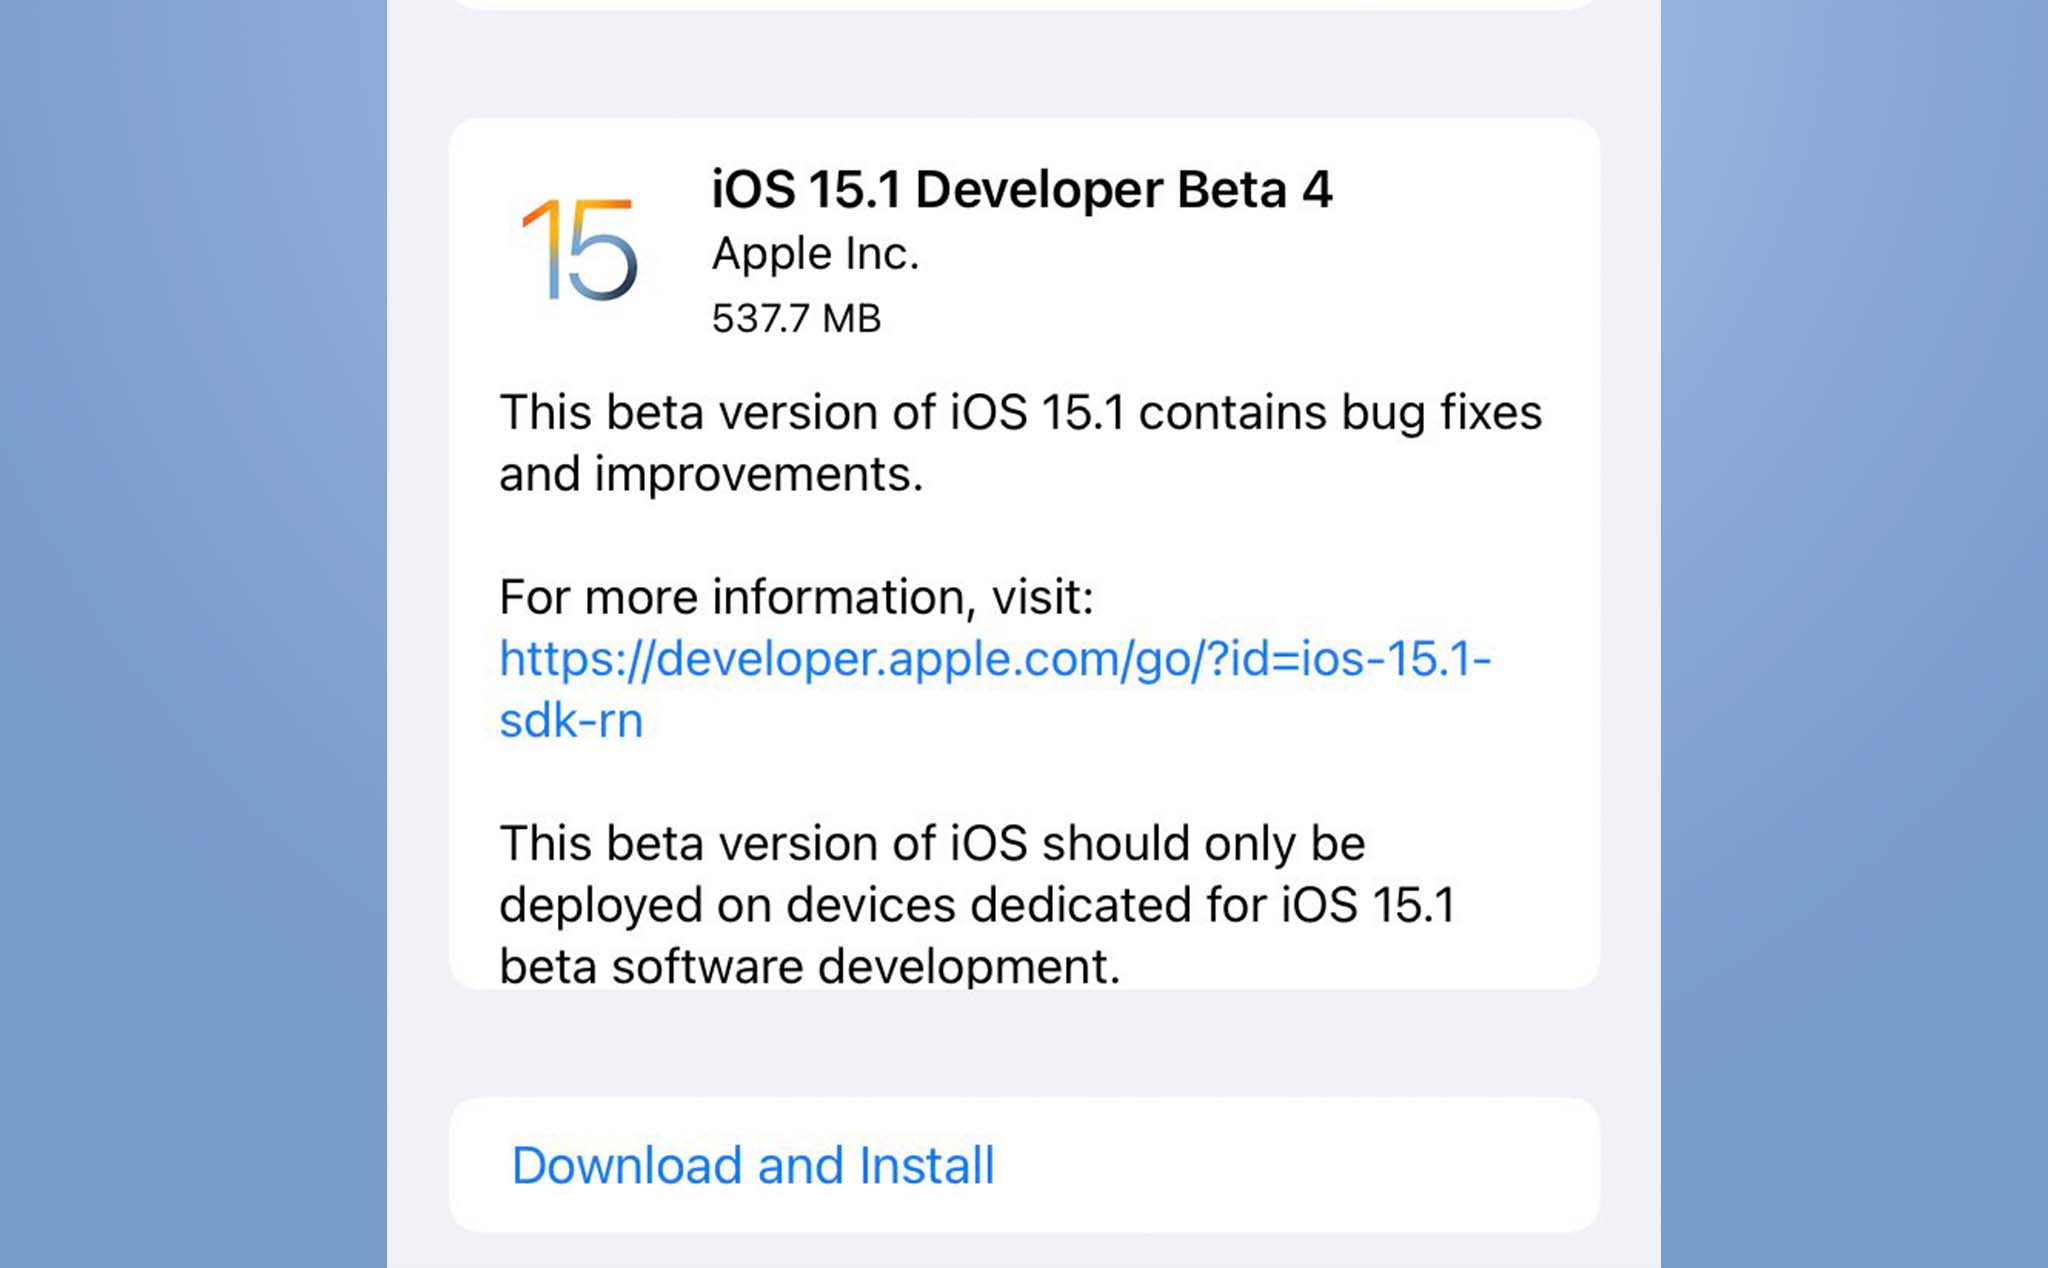 Apple phát hành iOS 15.1 Developer Beta 4